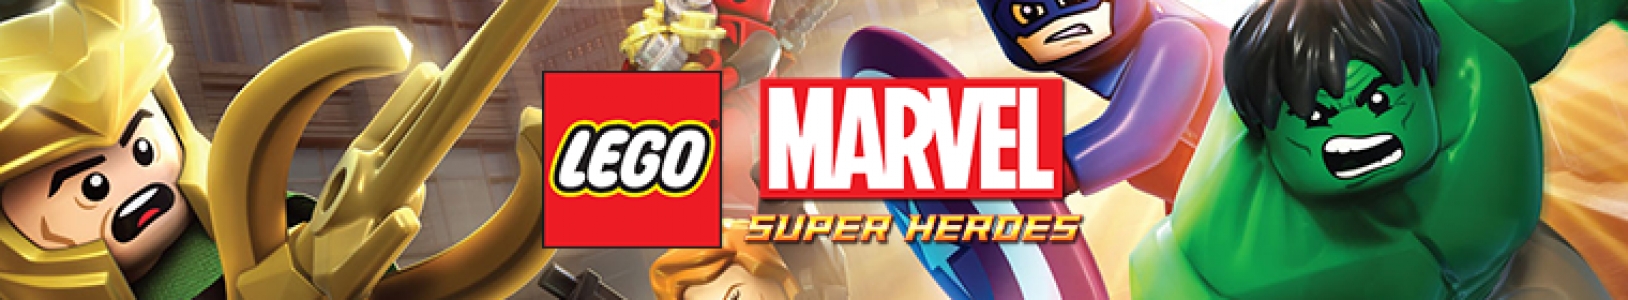 LEGO Marvel Super Heroes banner